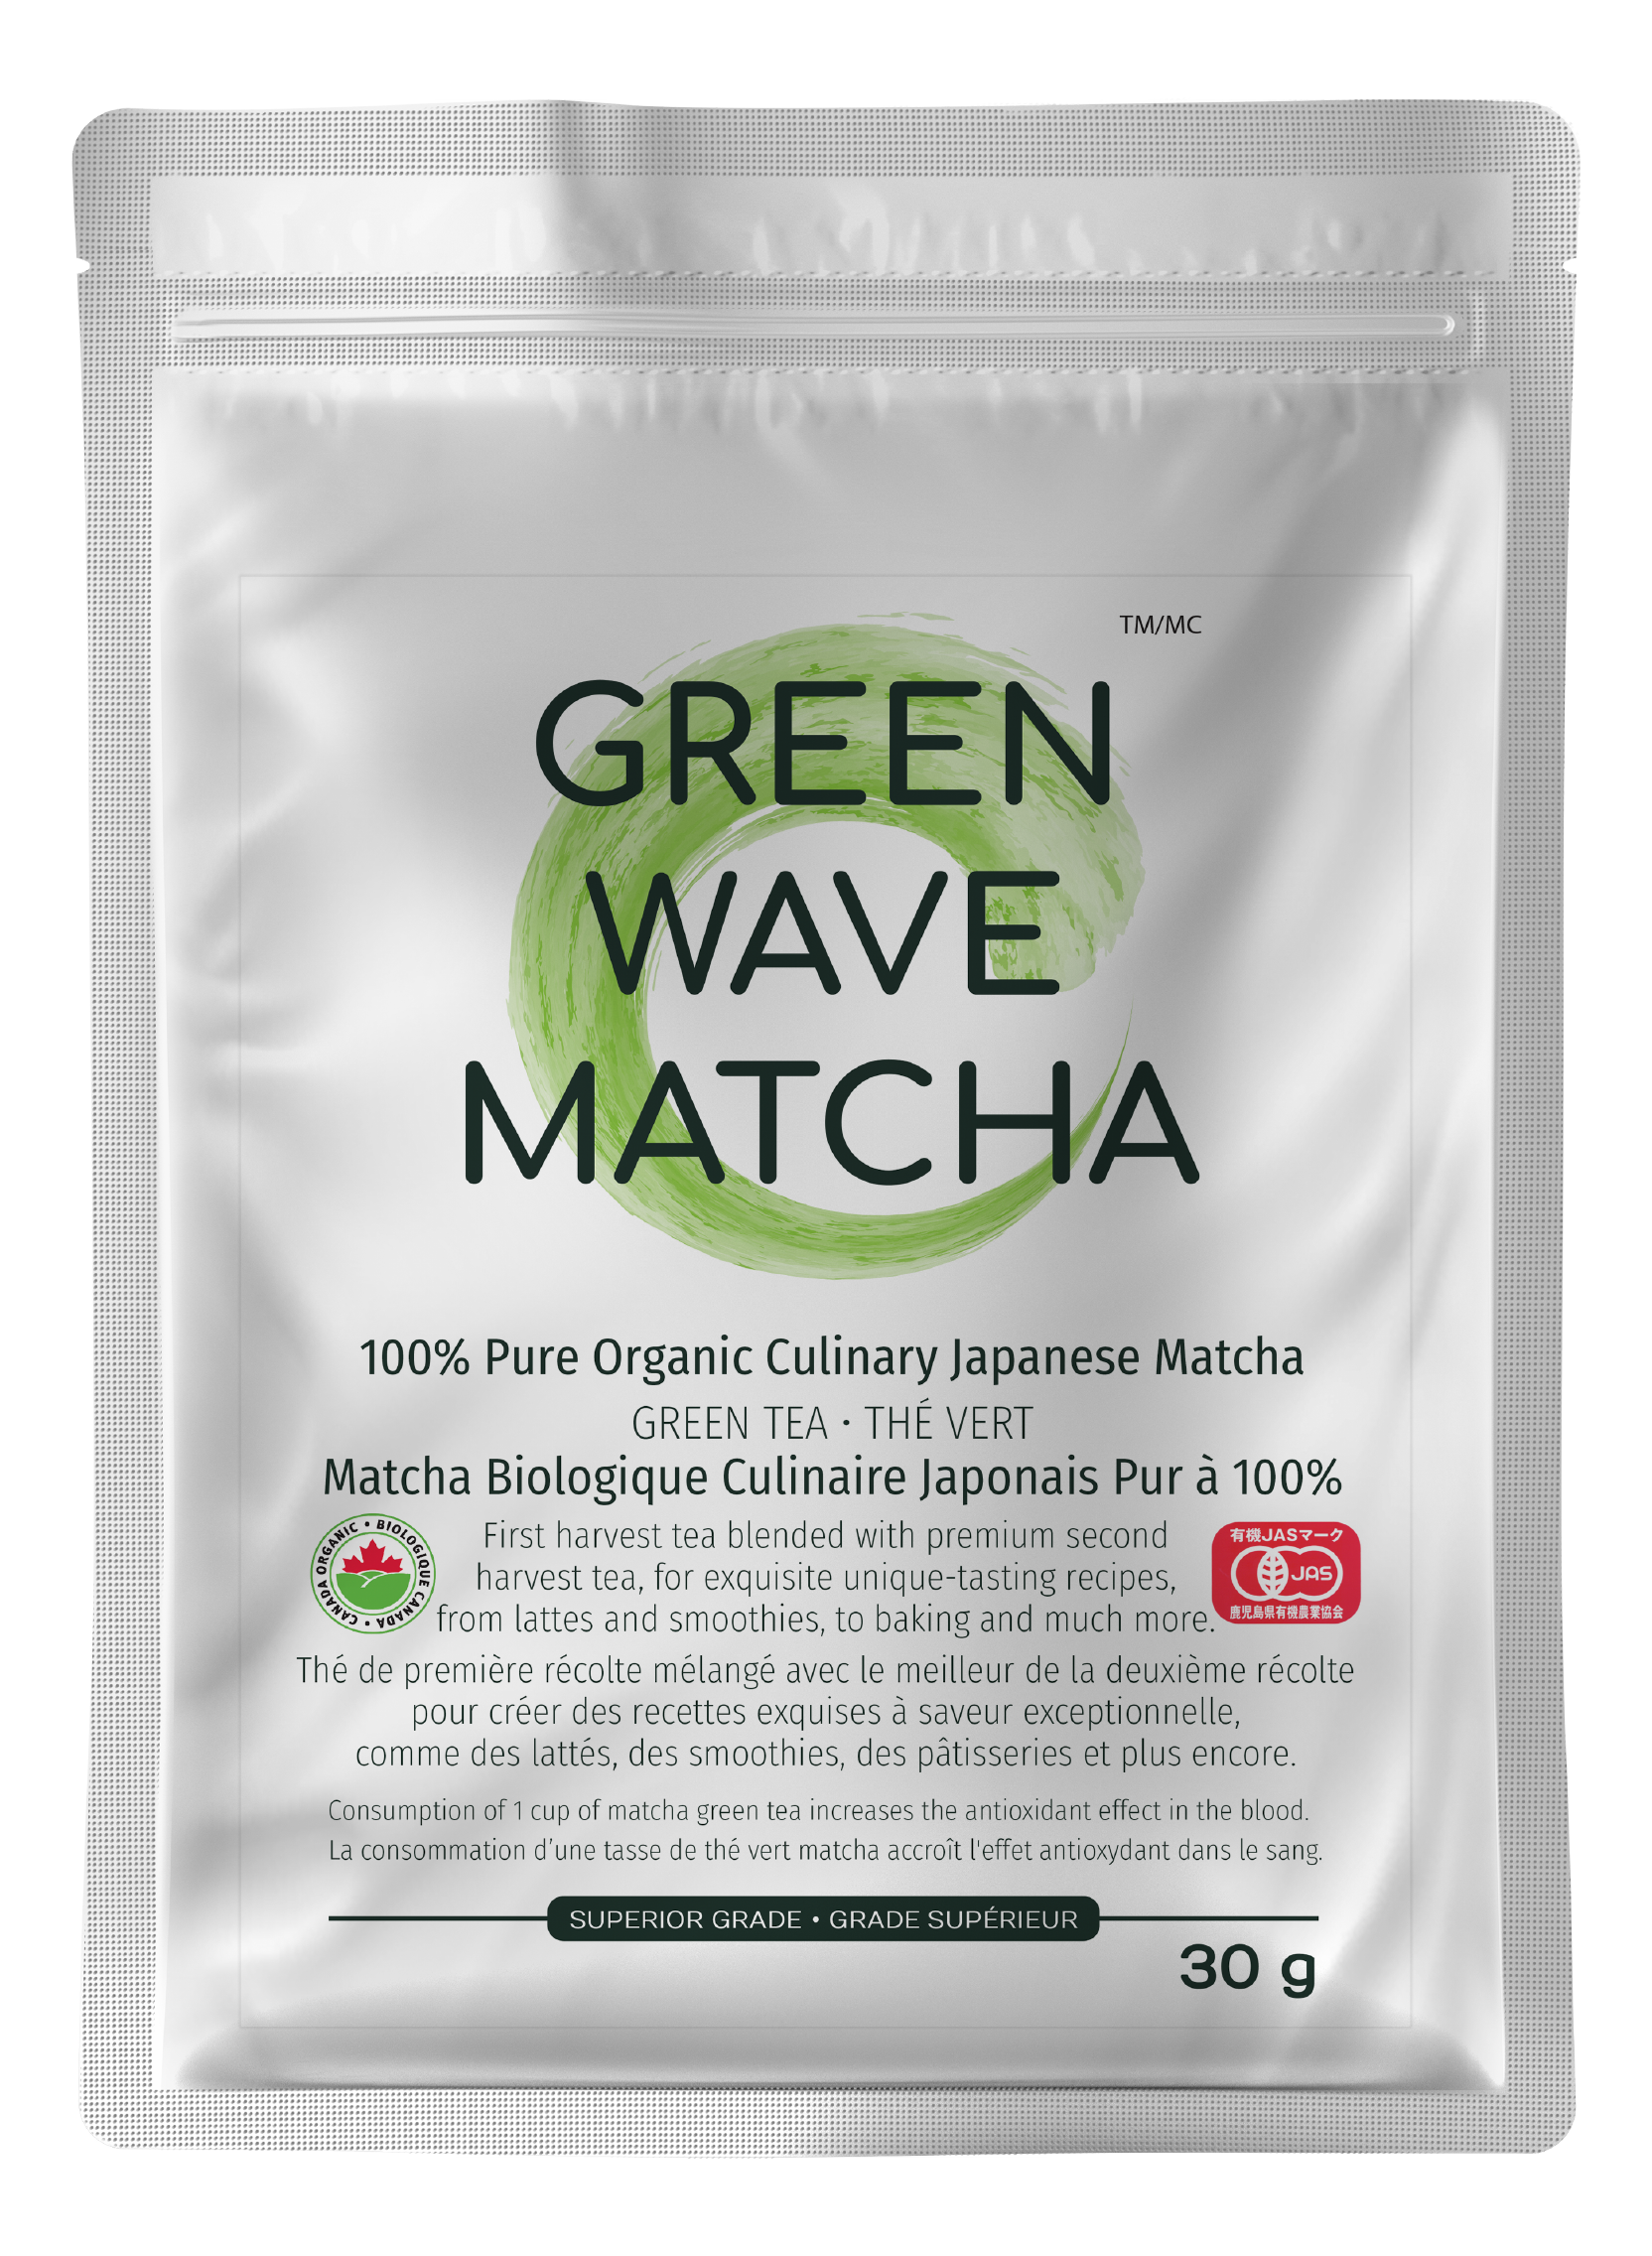 30g Organic Culinary Japanese Matcha